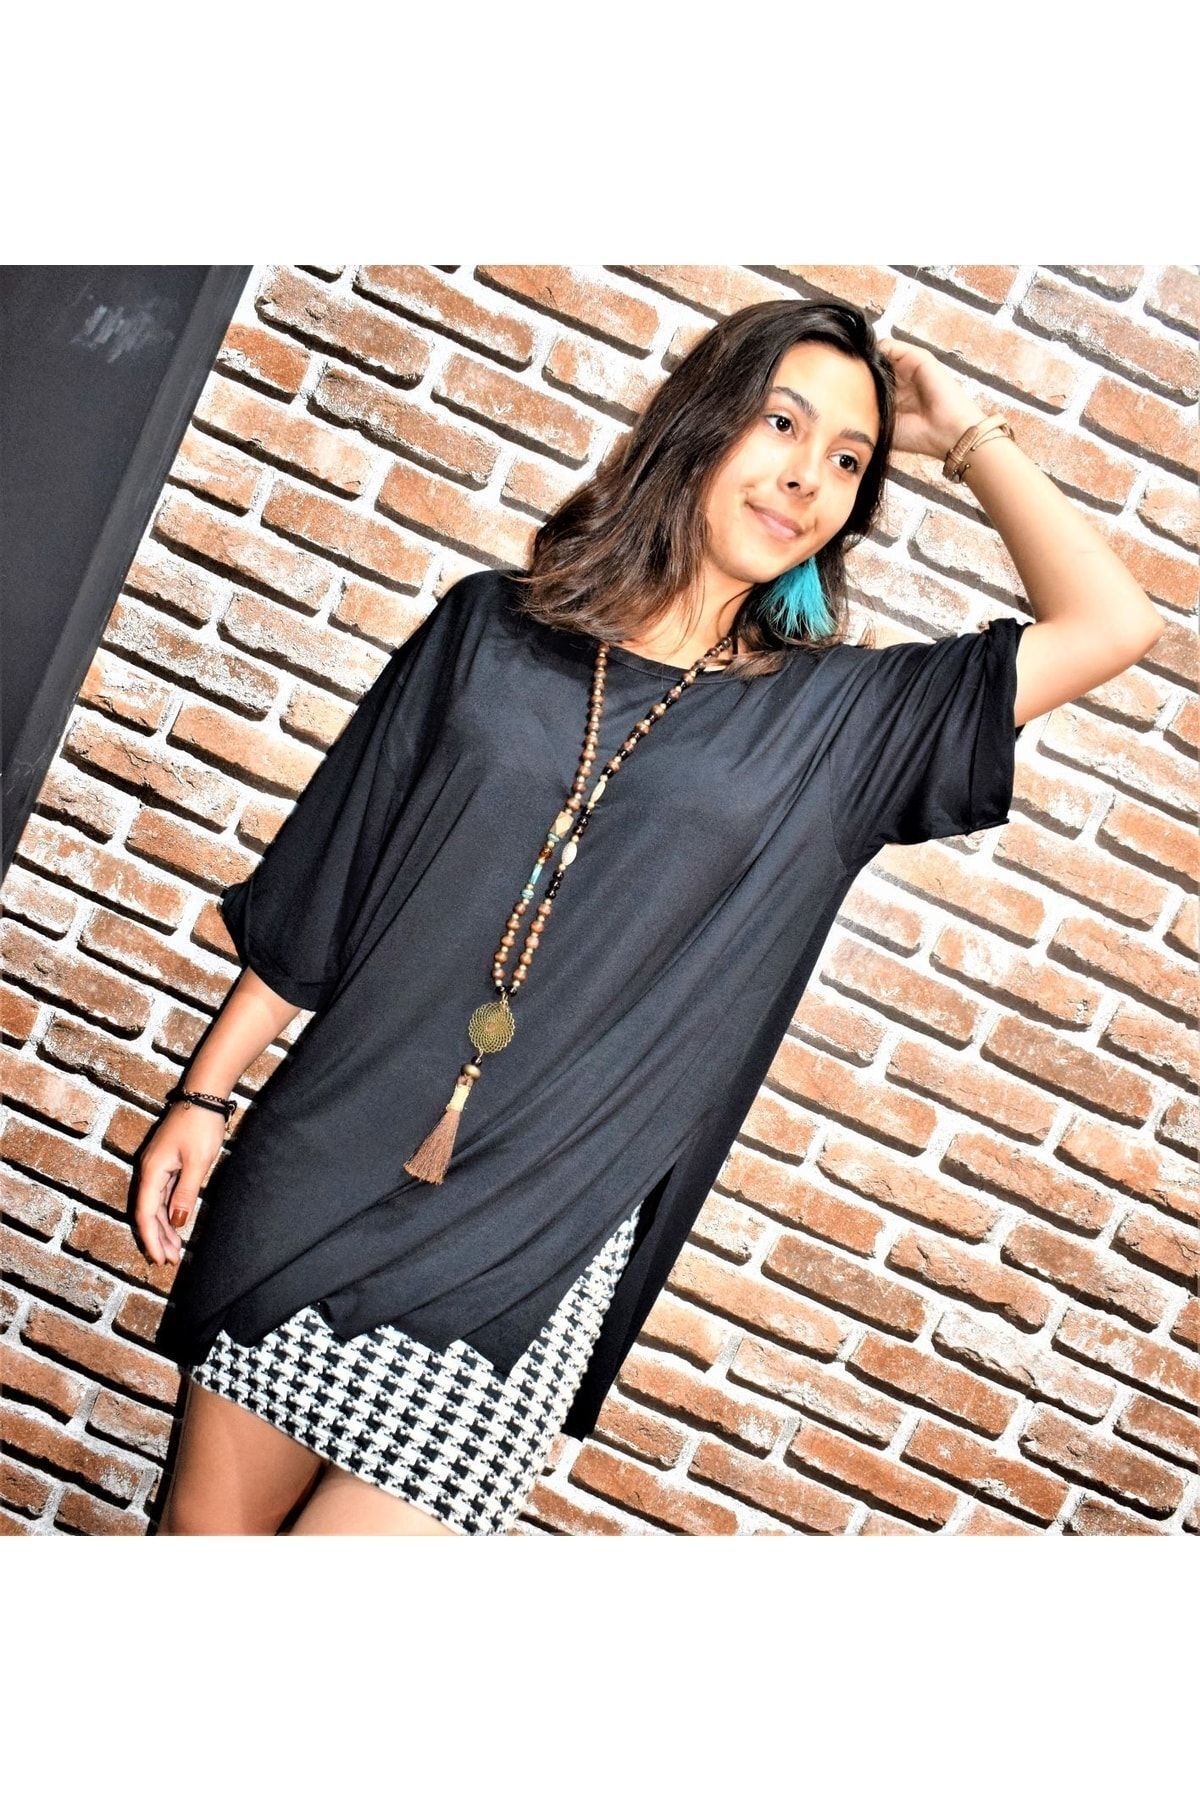 New Laviva Pasaklı Giyim Kadın Siyah Yırtmaçlı Kaliteli Yarım Kollu Salaş Oversize Uzun Tunik T-shirt Yb324150